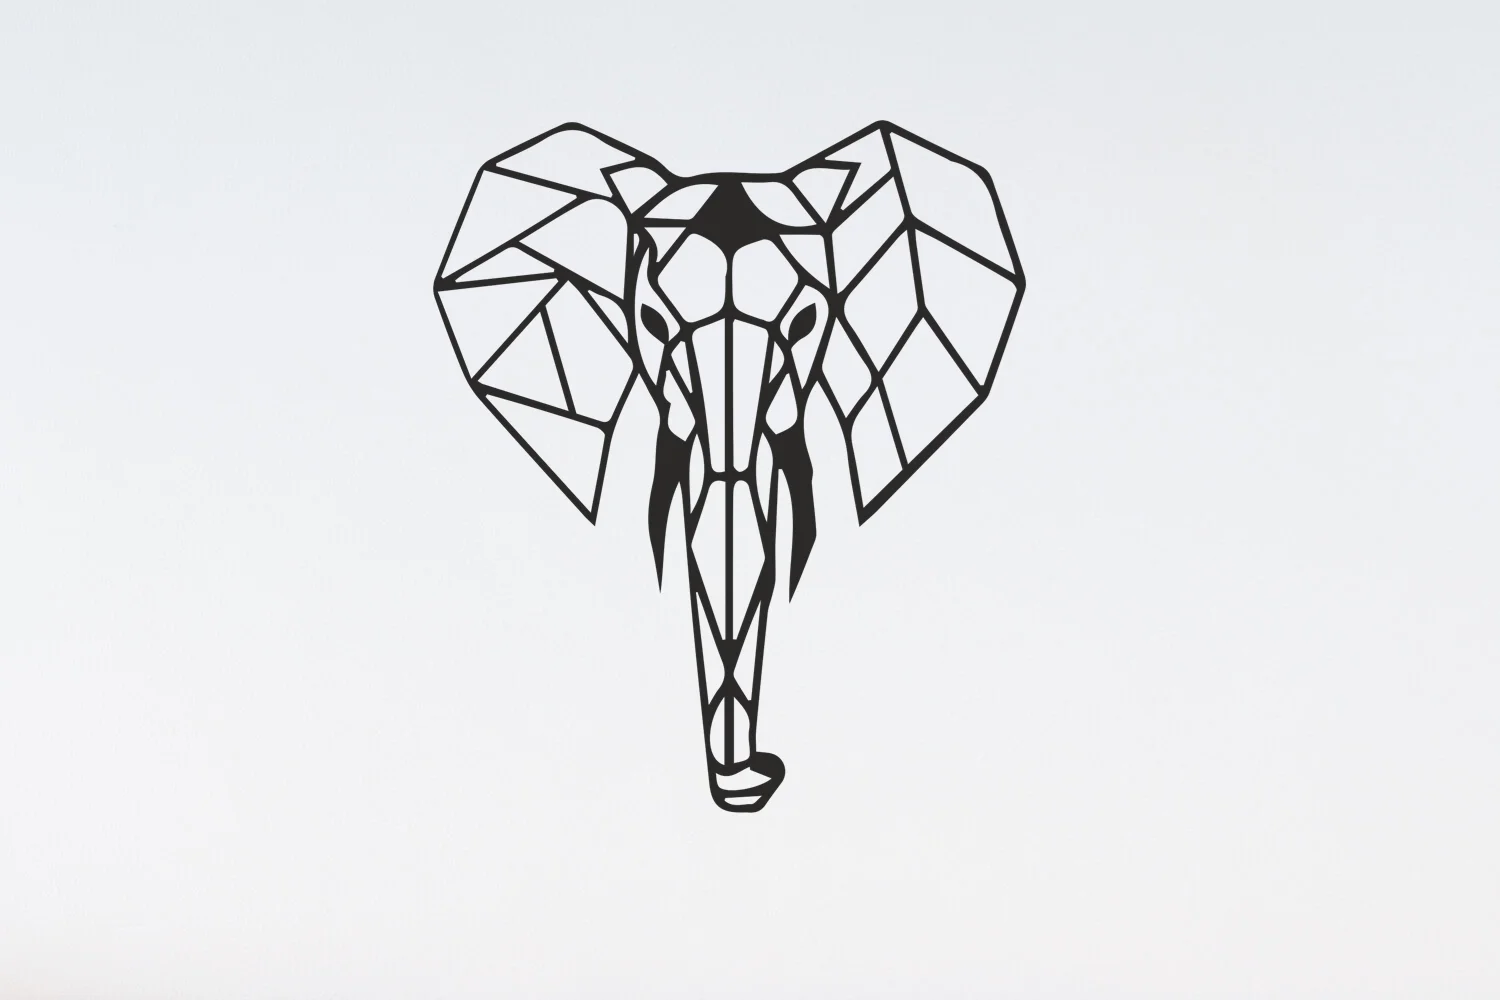 Металлический настенный рисунок в виде слона на Antdecor, 55x90 см, 2" x 35" черный, геометрический и минималистичный металлический настенный арт